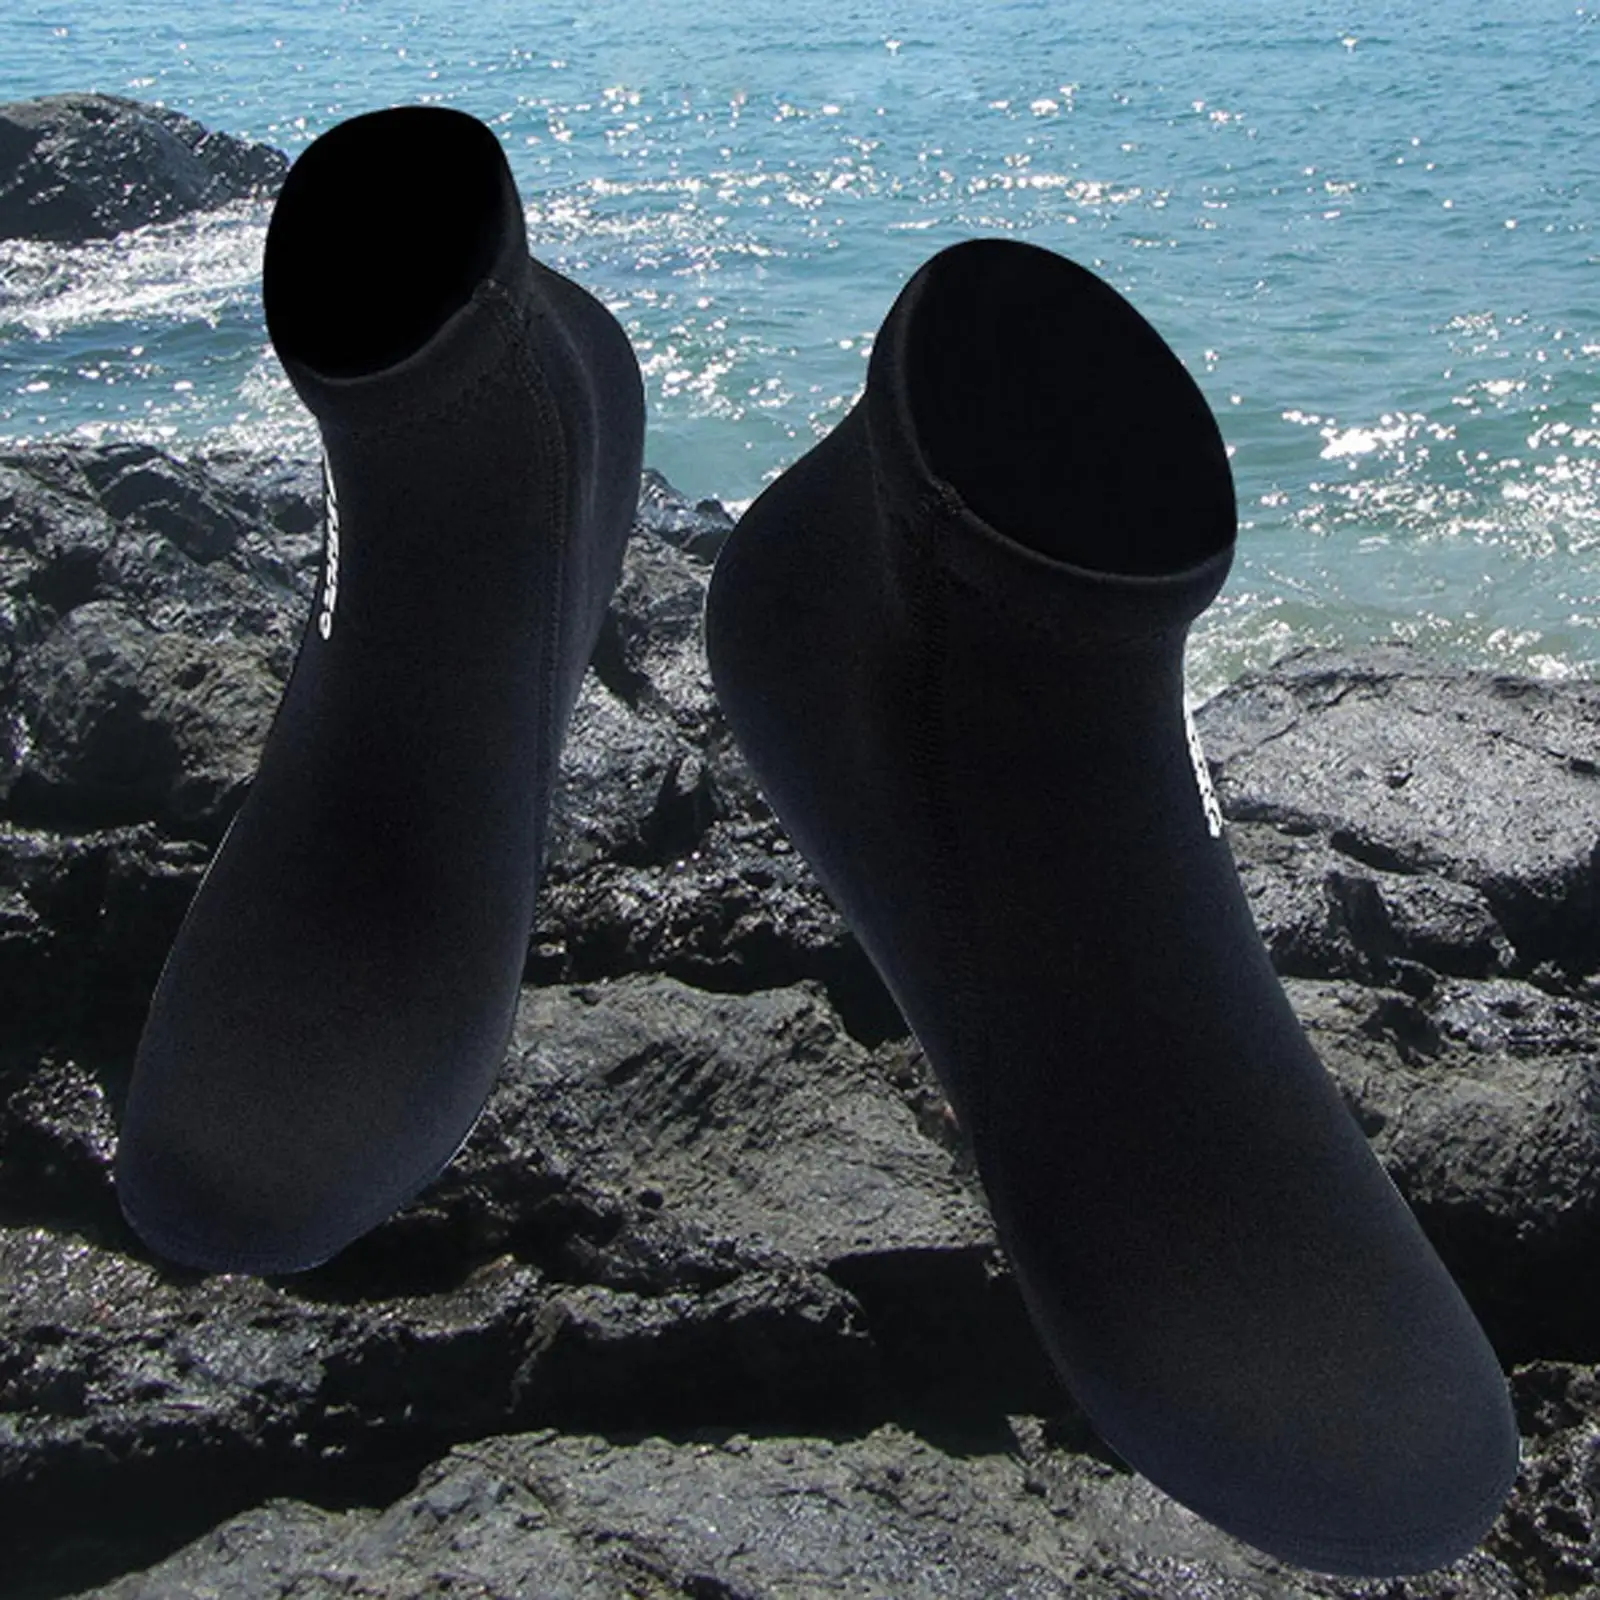 2mm Neoprene Wetsuit Socks Socks Diving Beach Water Fin Sock Anti Slip Barefoot Quick Dry for Women Men Sailing Kayaking